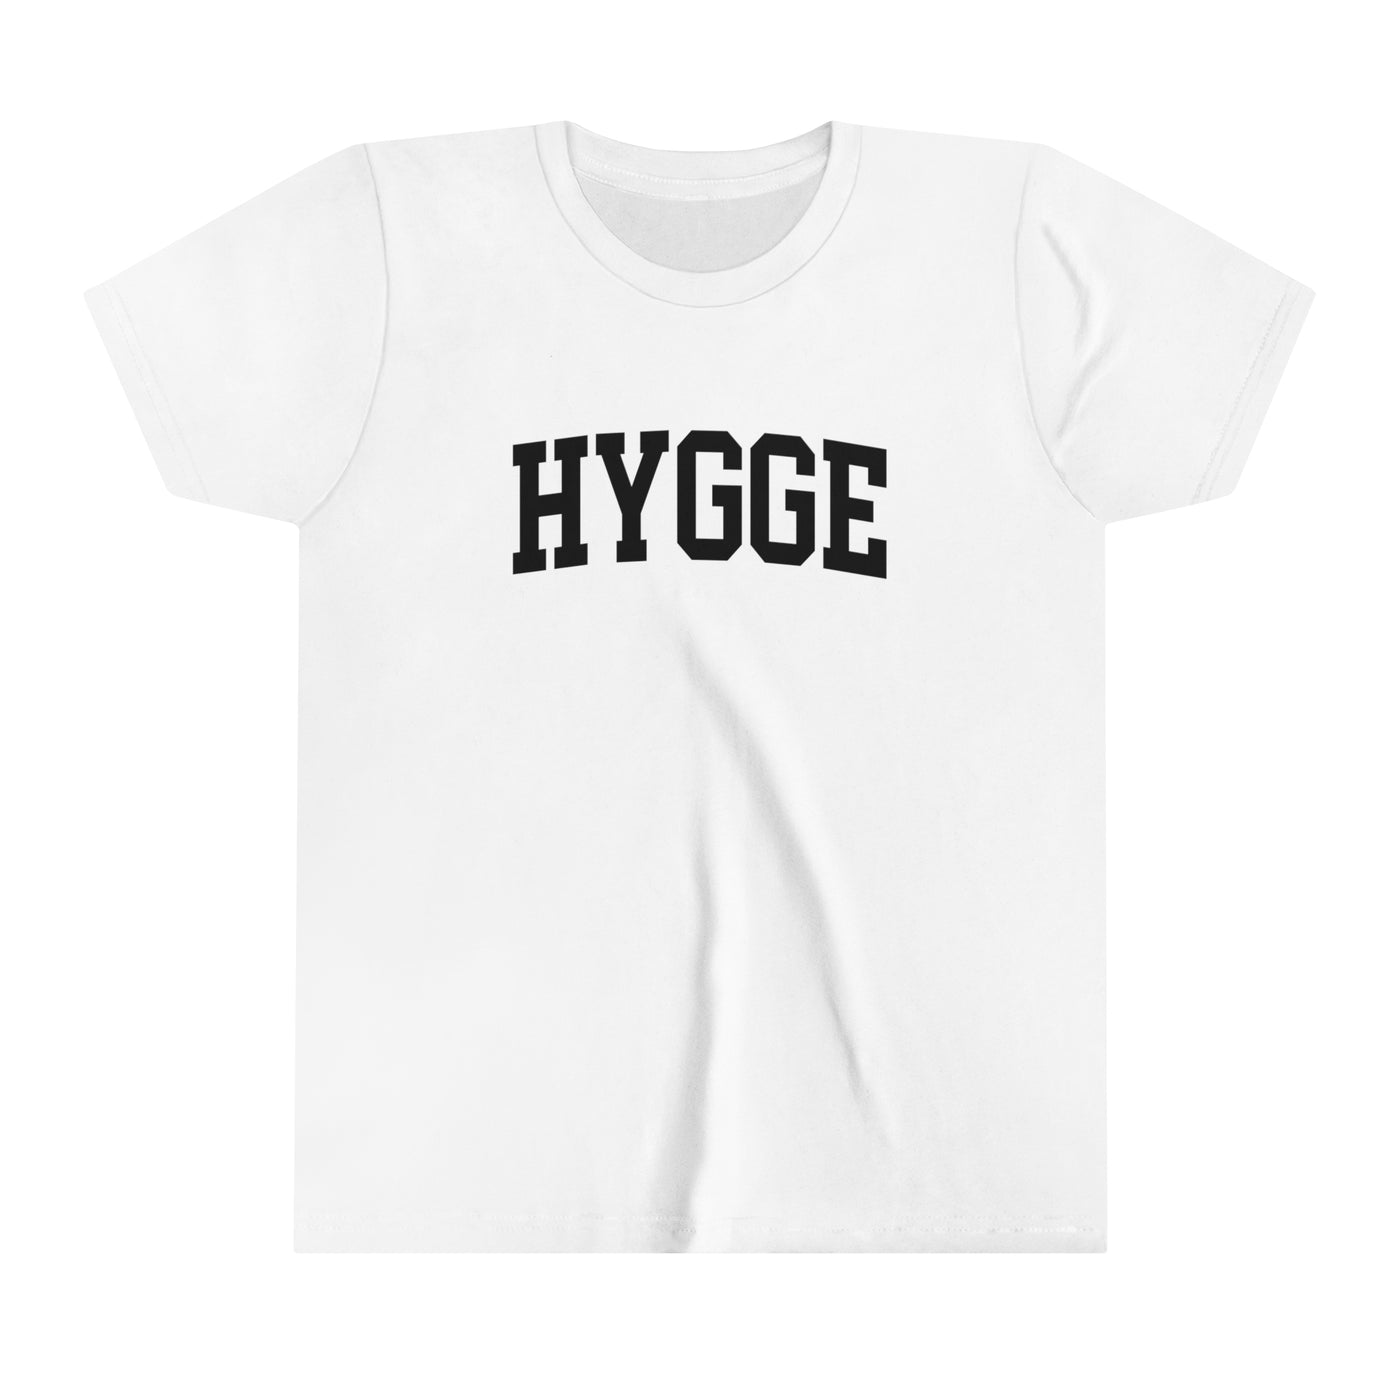 Hygge Kids T-Shirt